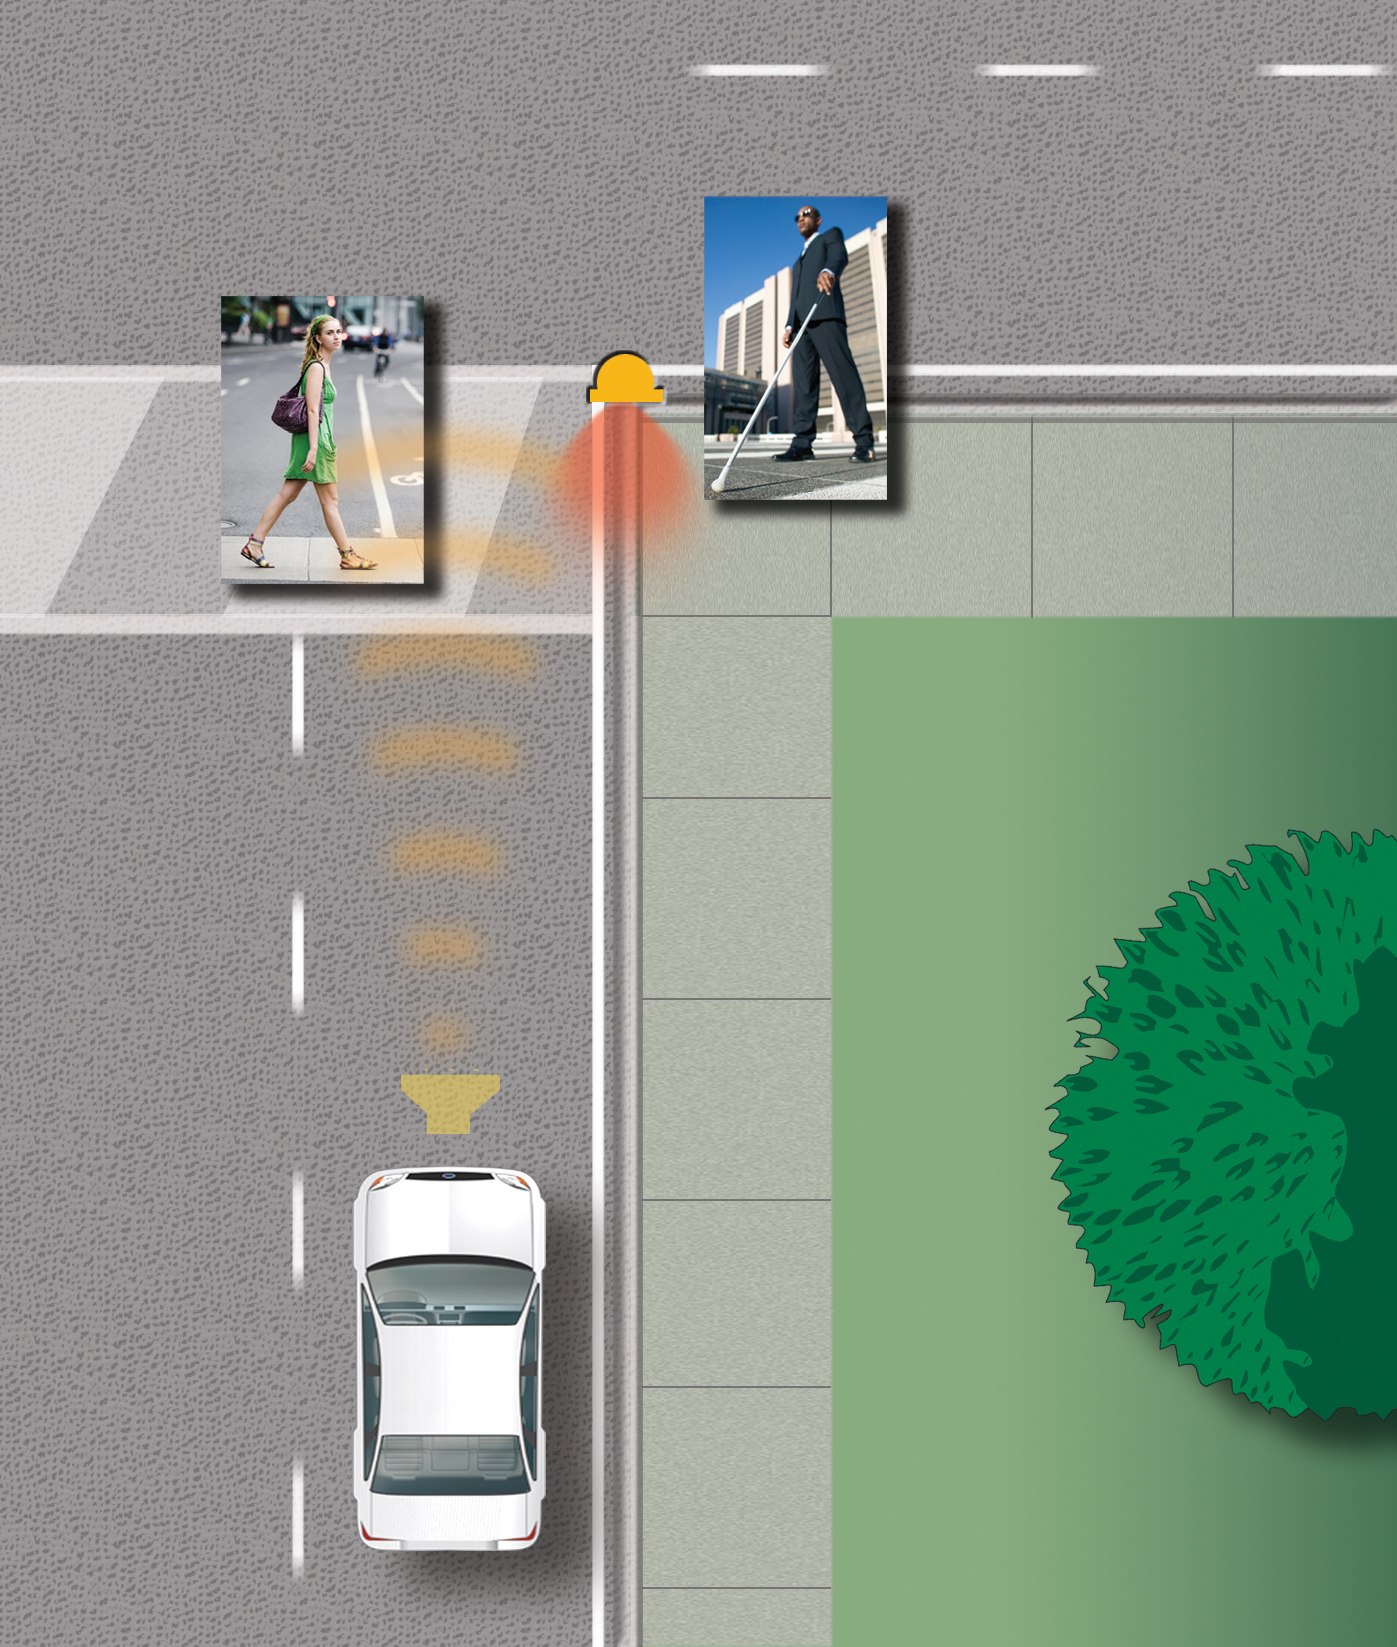  Инновационные звуковые генераторы Delphi помогут обеспечить безопасность пешеходов 